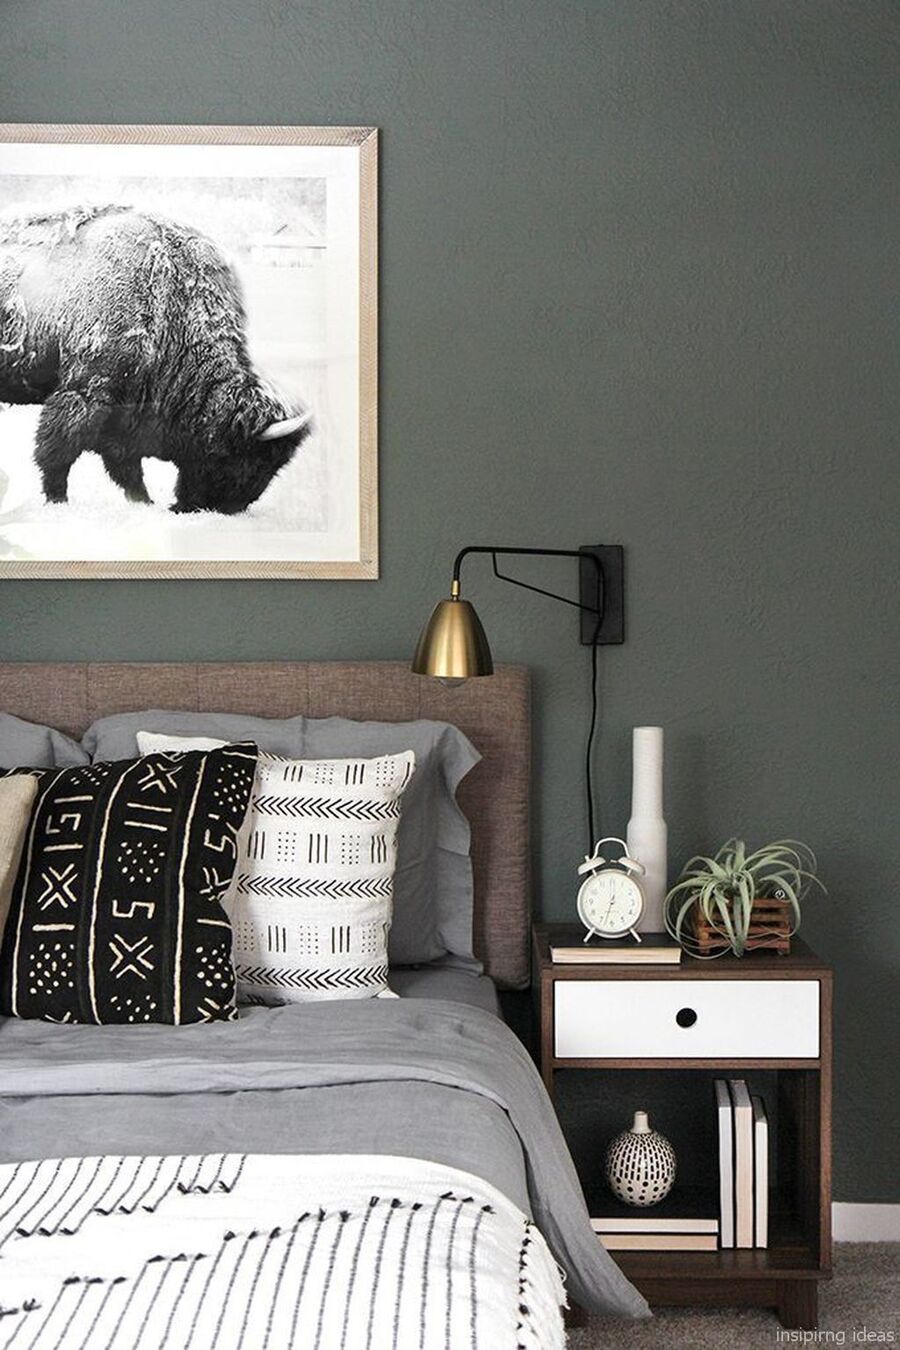 Detalle de un dormitorio con muro verde grisáceo oscuro y un cuadro con una fotografía en blanco y negro. Debajo está la cama, cuyas sábanas, almohadas y plumón son grises. También tiene cojines con diseños en blanco, negro y gris. Junto a la cama hay un celador de madera con cajón blanco.